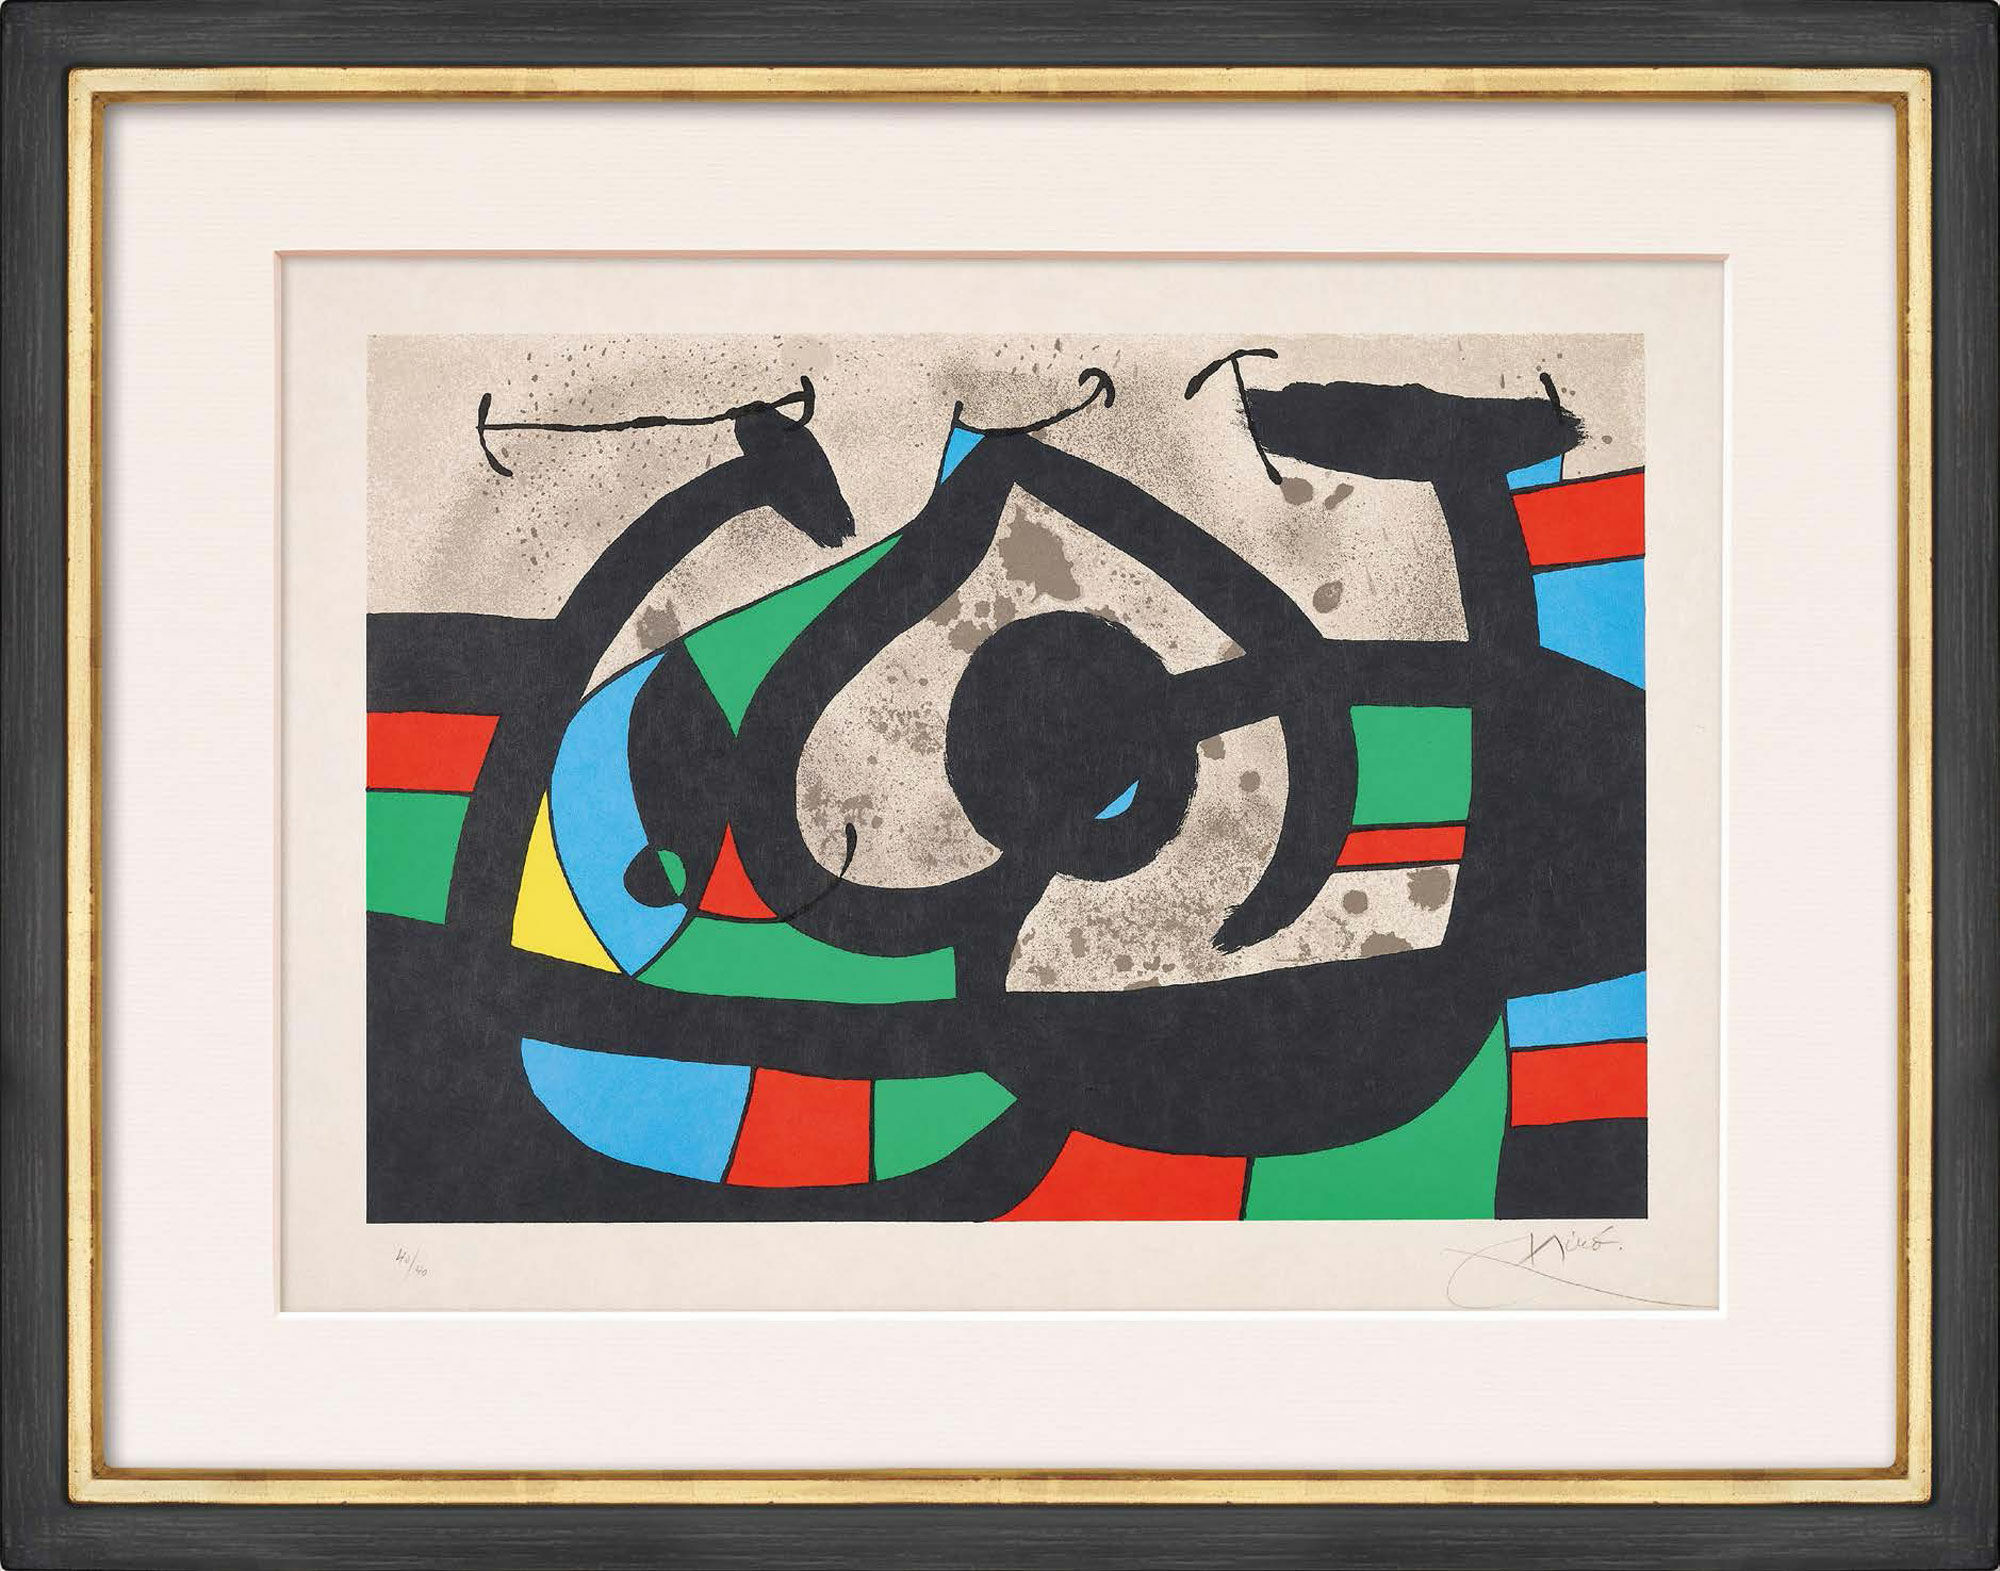 Bild "Le lézard aux plumes d’or" (1971) von Joan Miró